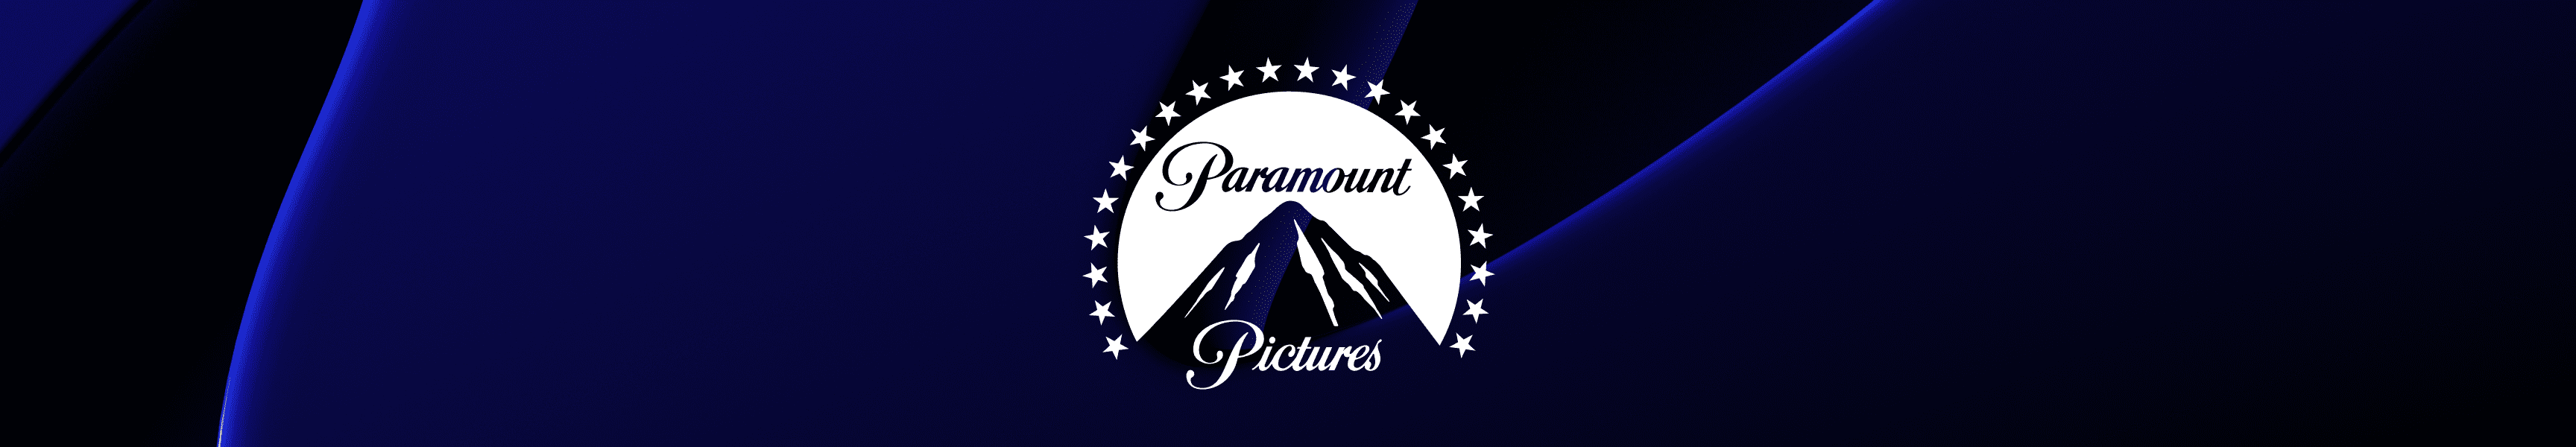 Paramount Meilleures ventes d'images